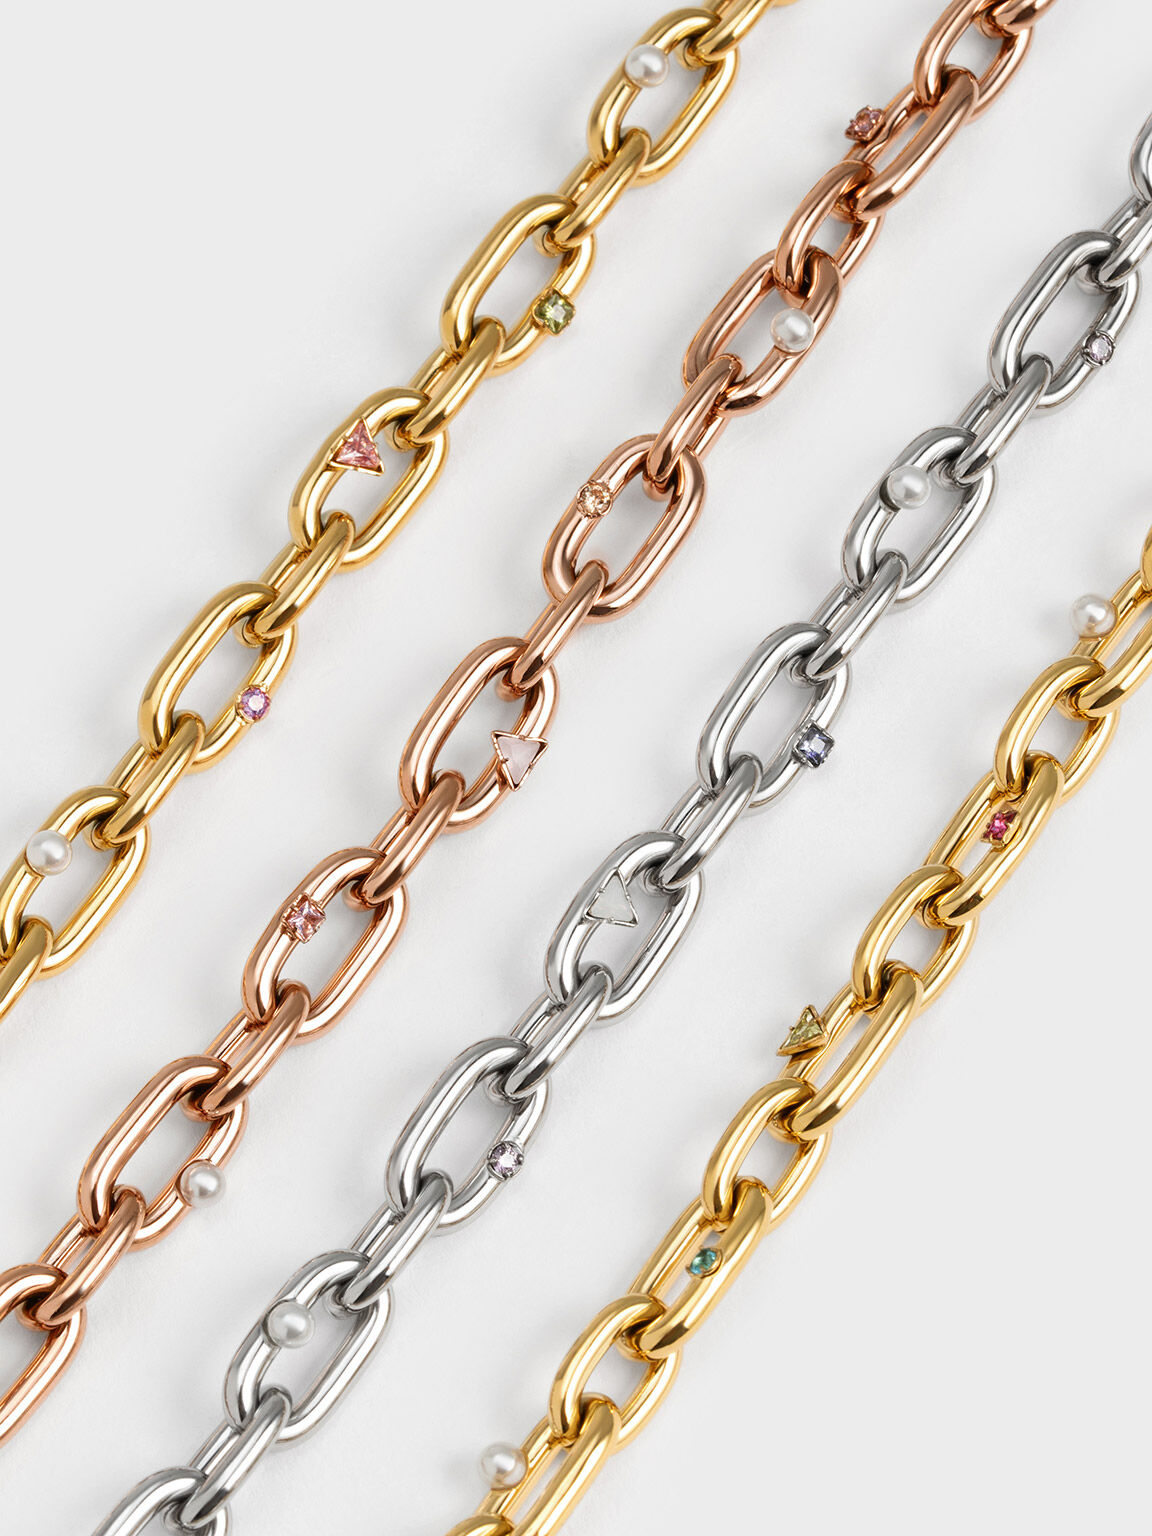 Crystal-Embellished Chain-Link Necklace, Nude, hi-res